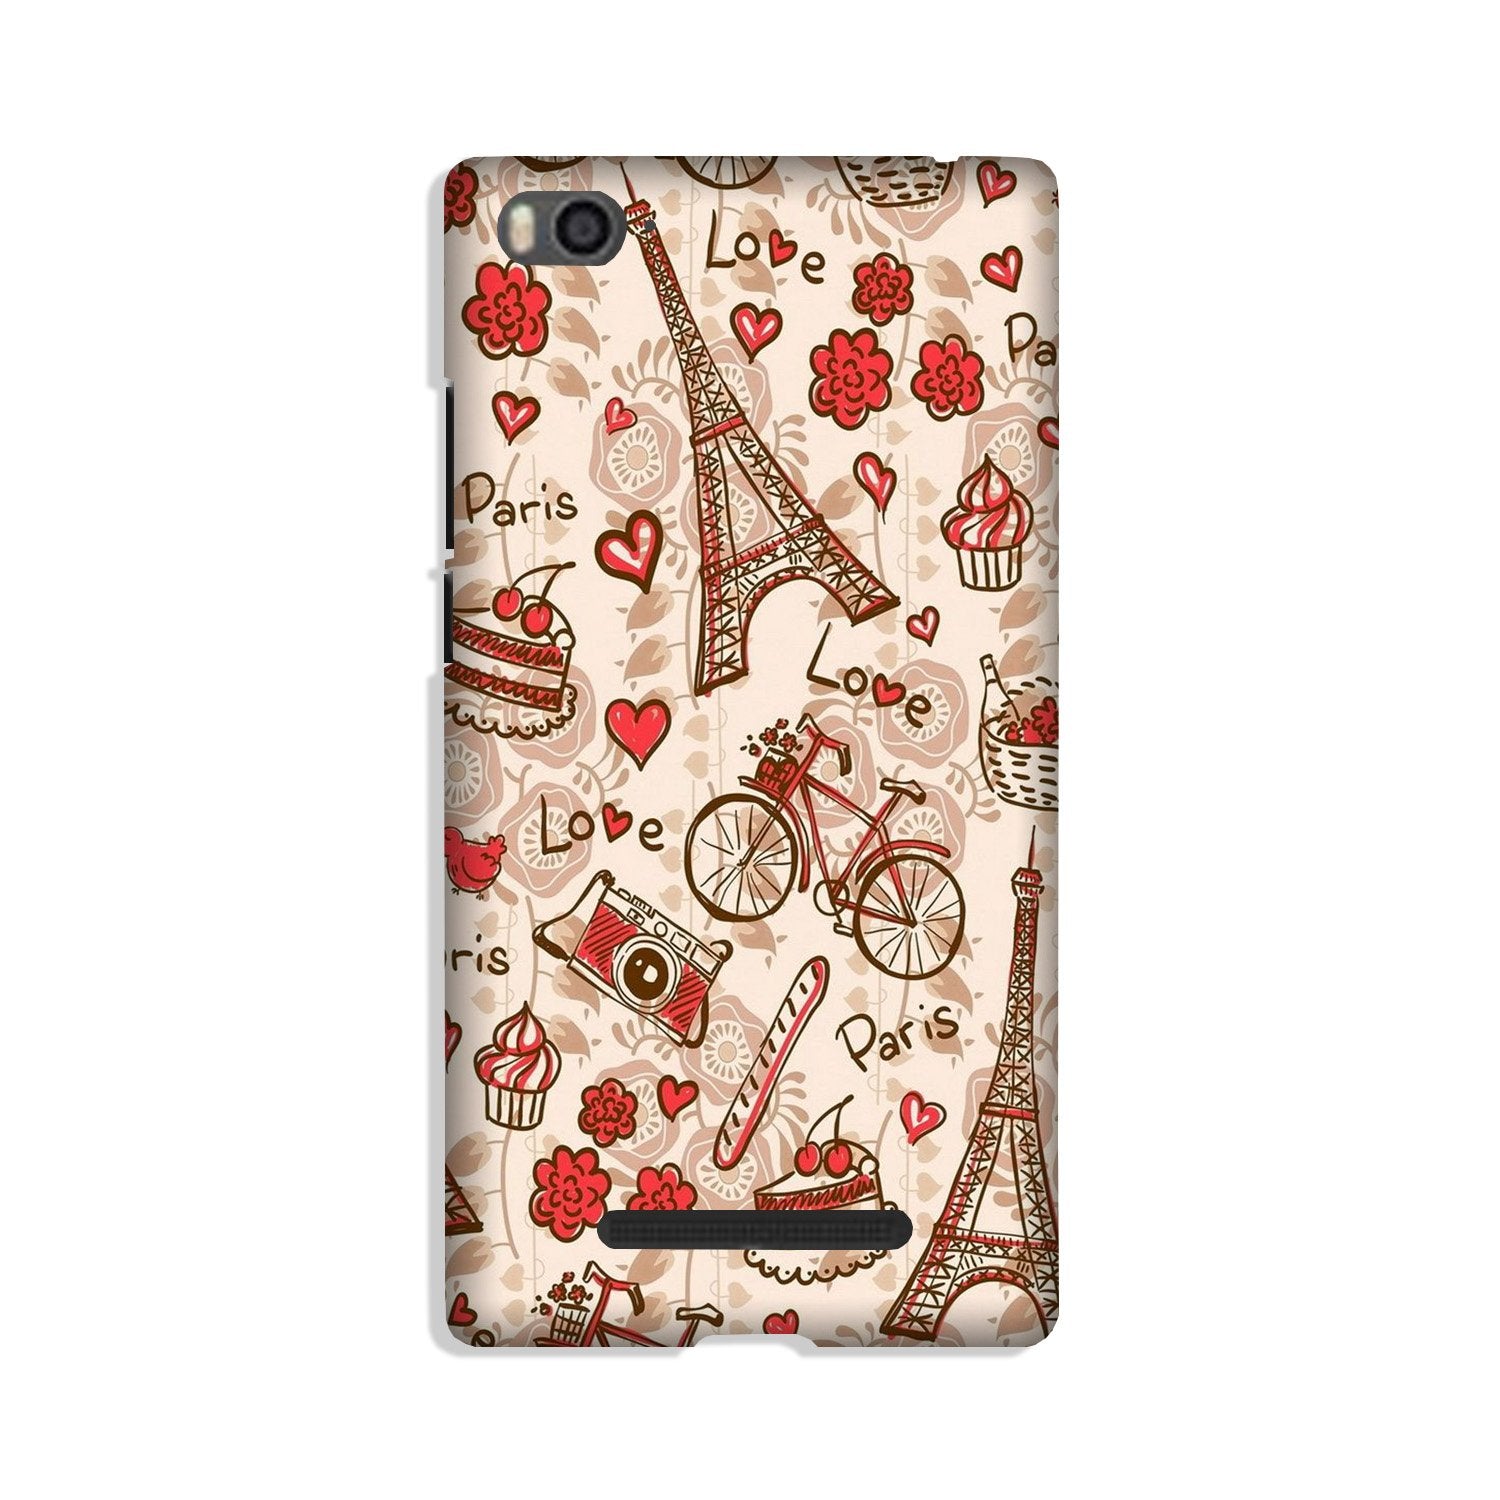 Love Paris Case for Xiaomi Mi 4i  (Design - 103)